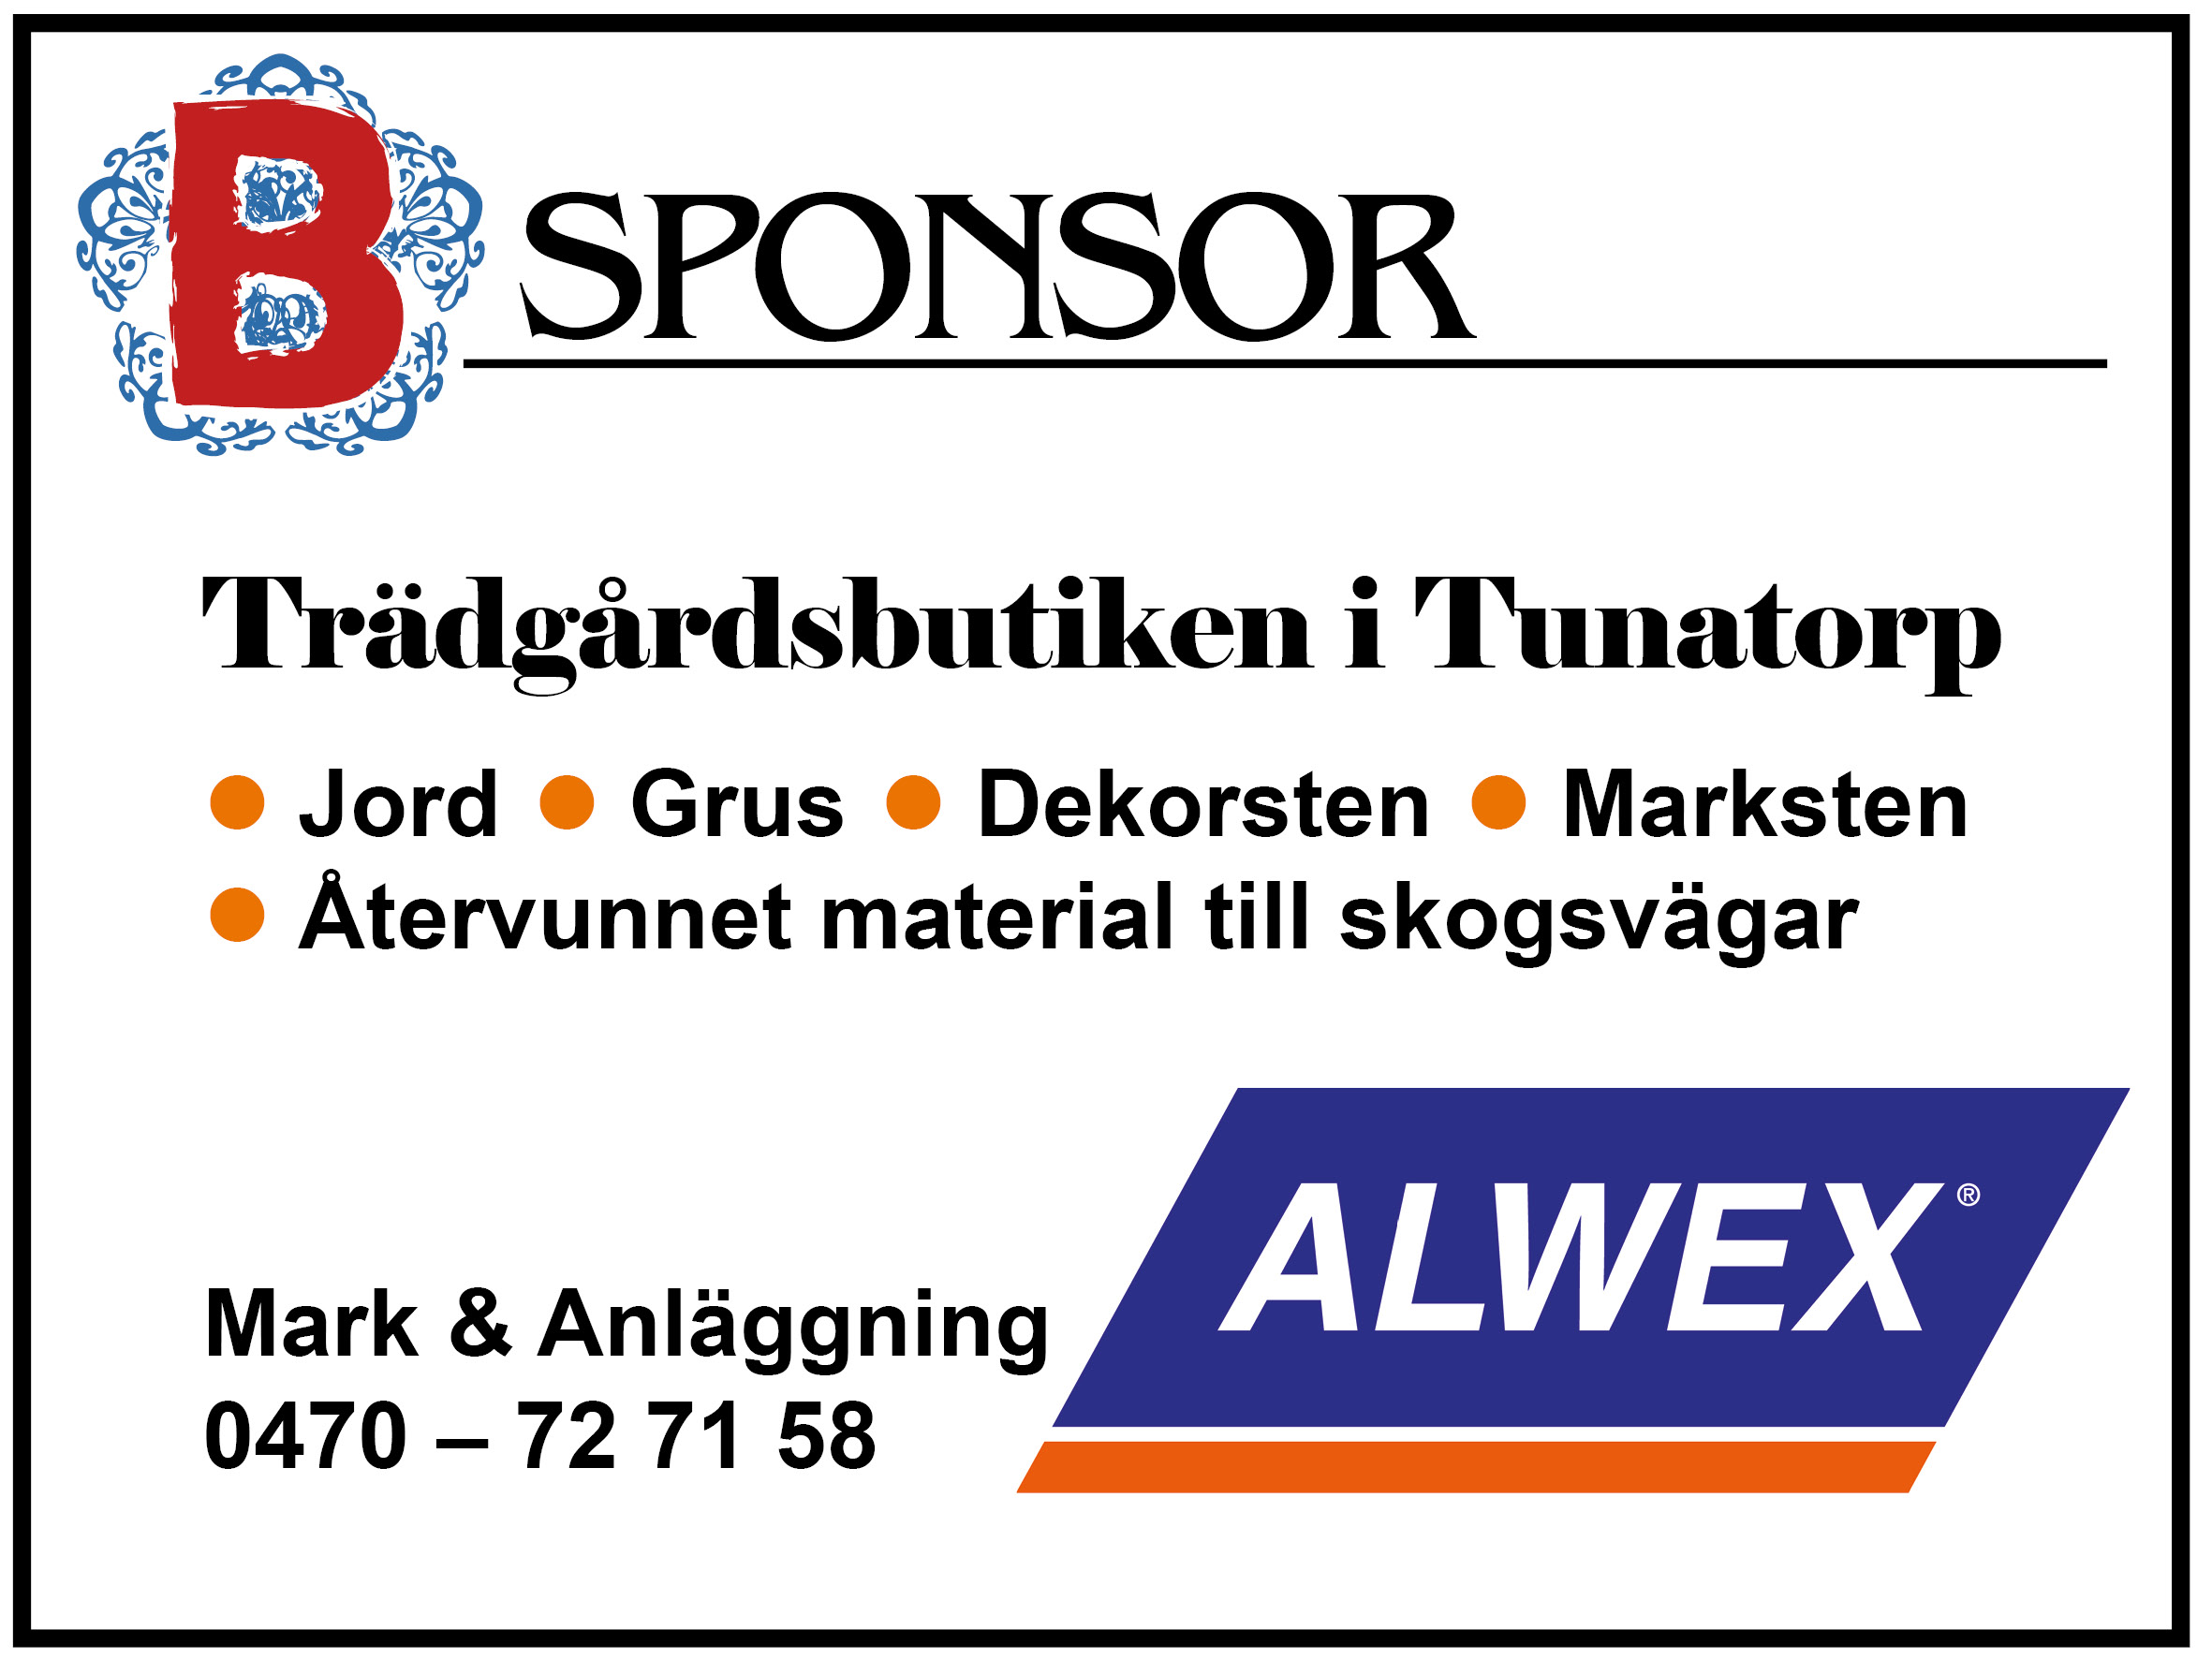 Sponsor: Alwex